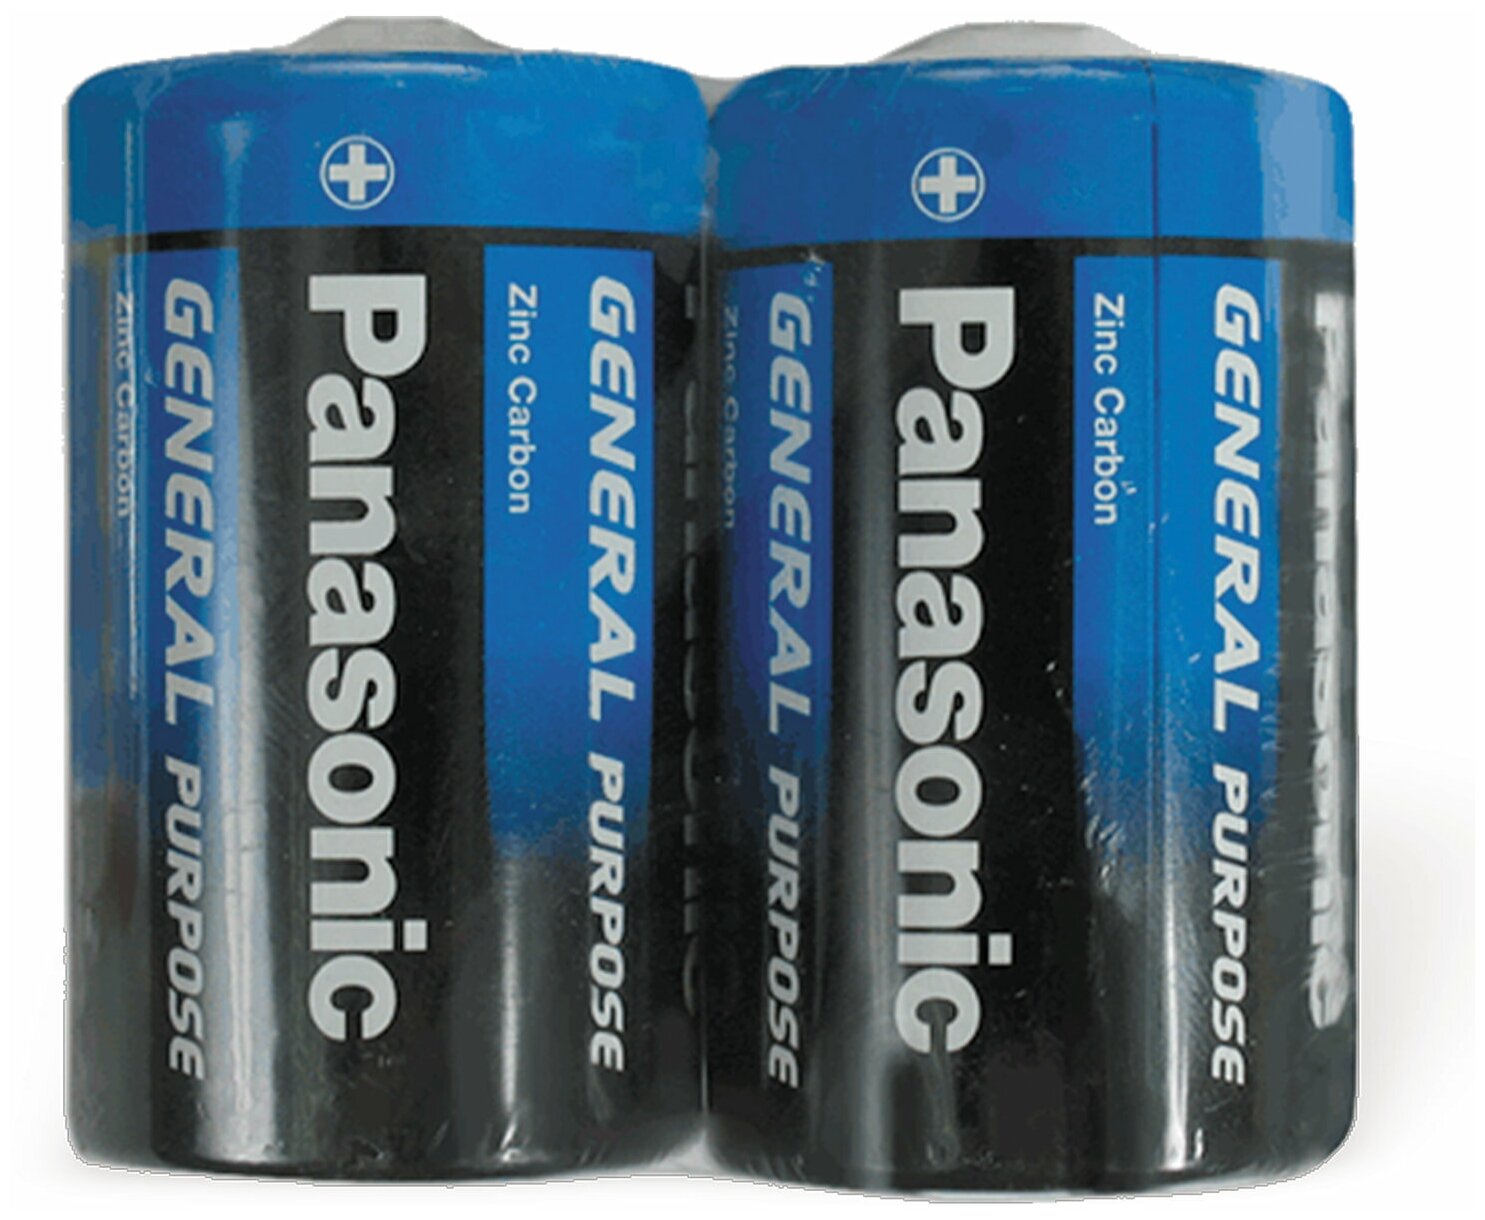 Батарейки комплект 2шт, PANASONIC D R20 (373), солевые, в пленке, 1.5 В